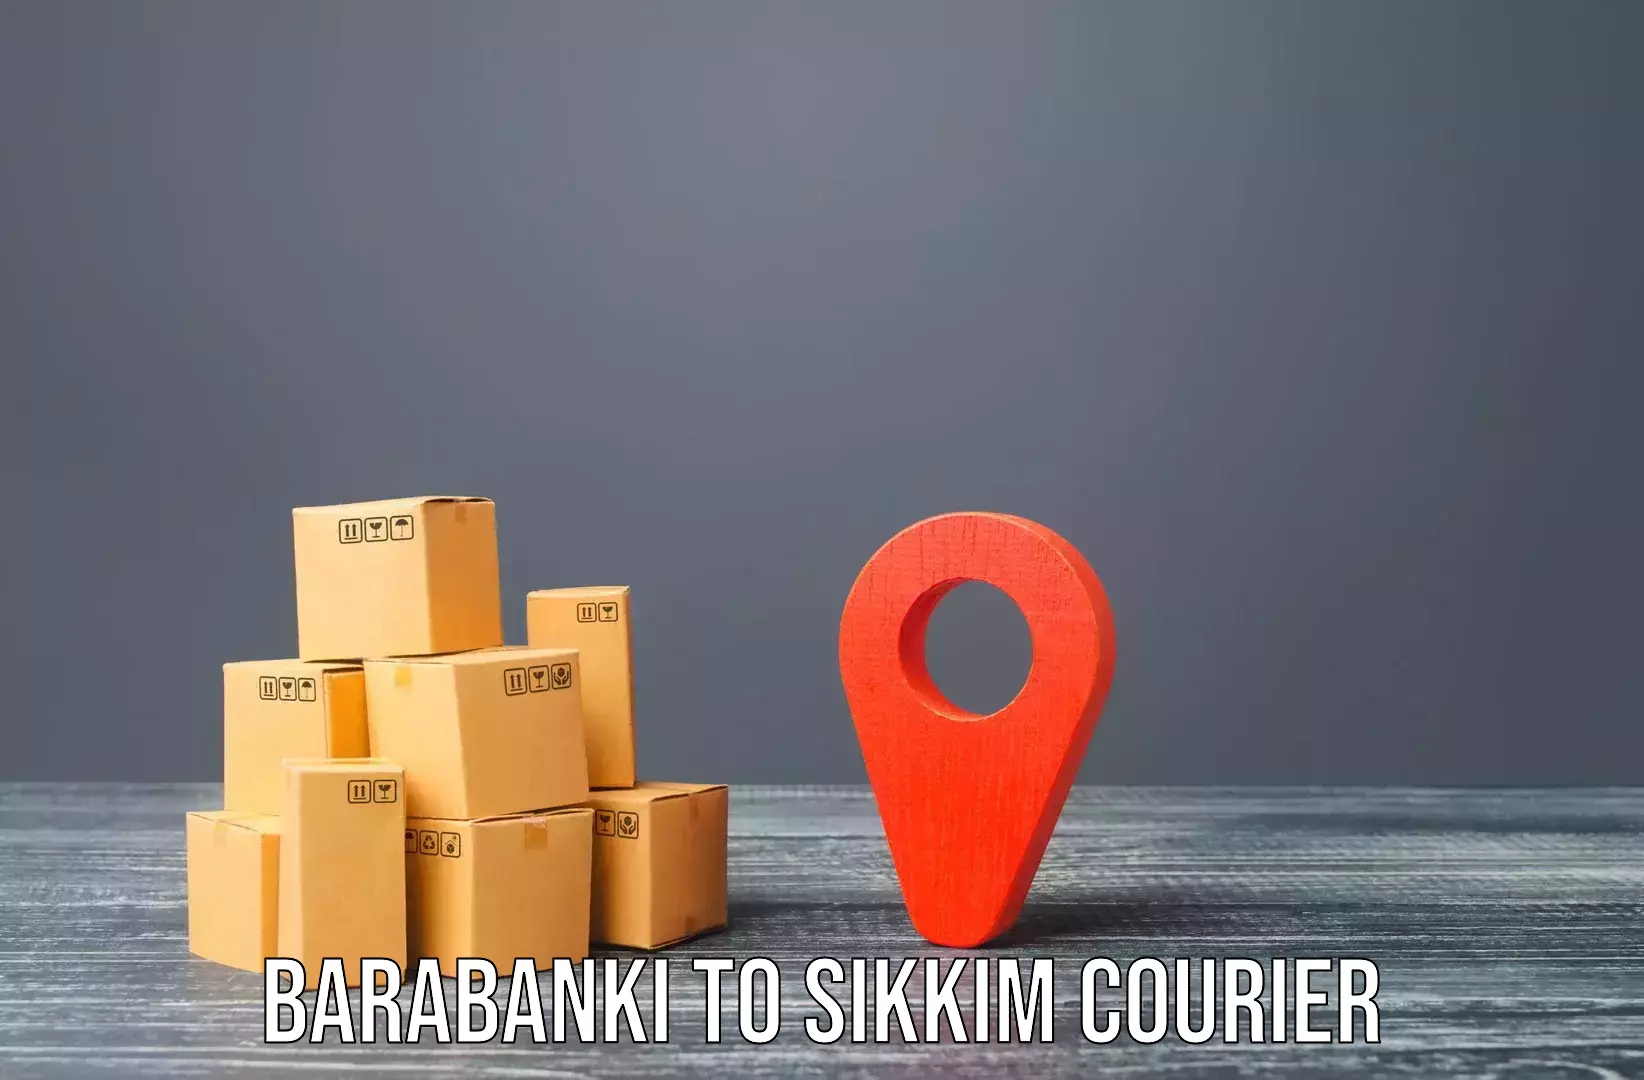 Furniture transport and storage Barabanki to Geyzing